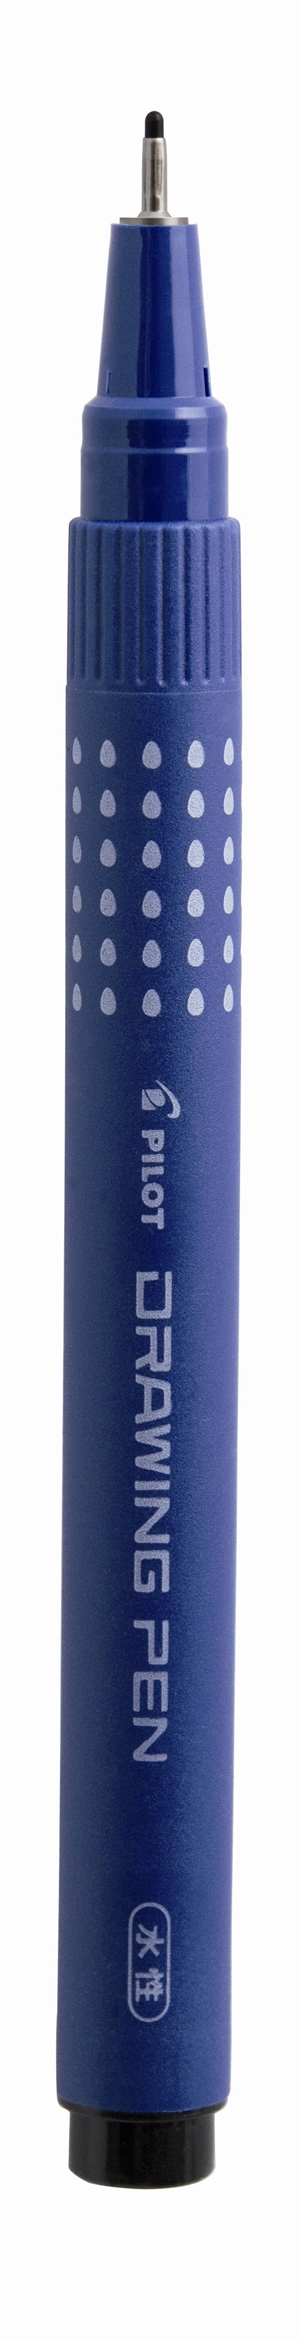 Penna a punta di feltro con cappuccio, penna disegno 0,8mm colore nero